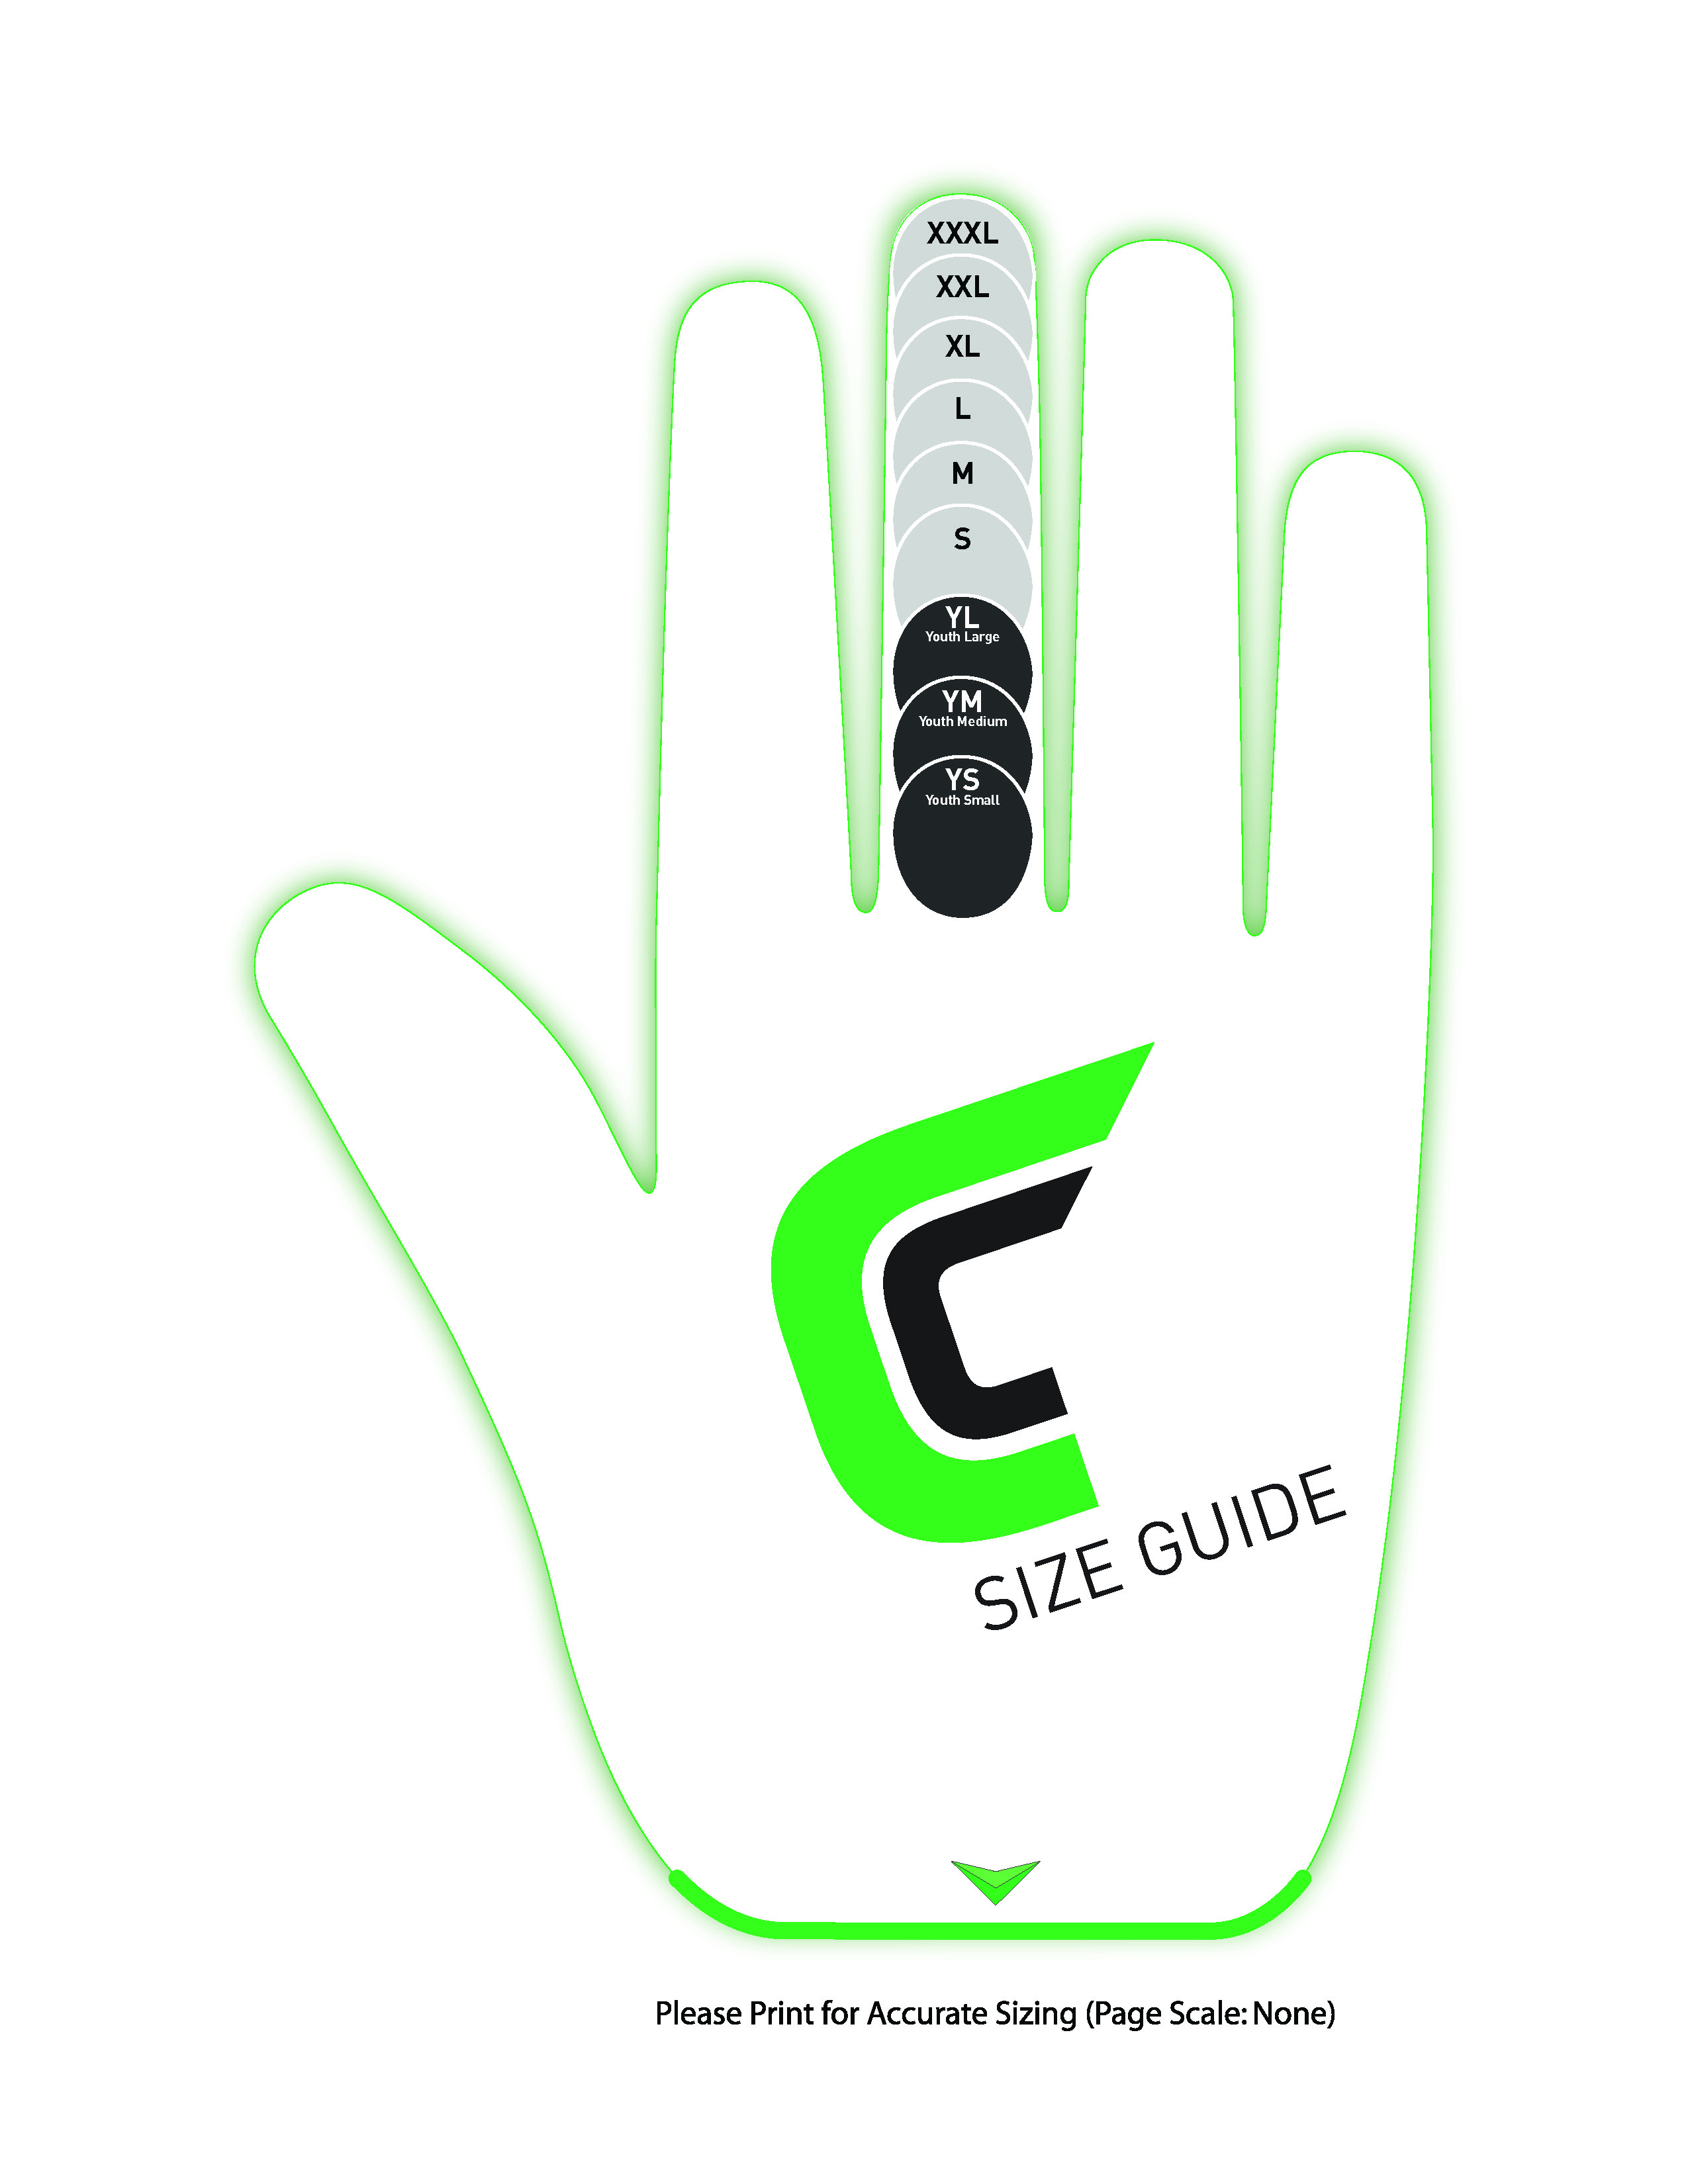 Neumann Gloves Size Chart